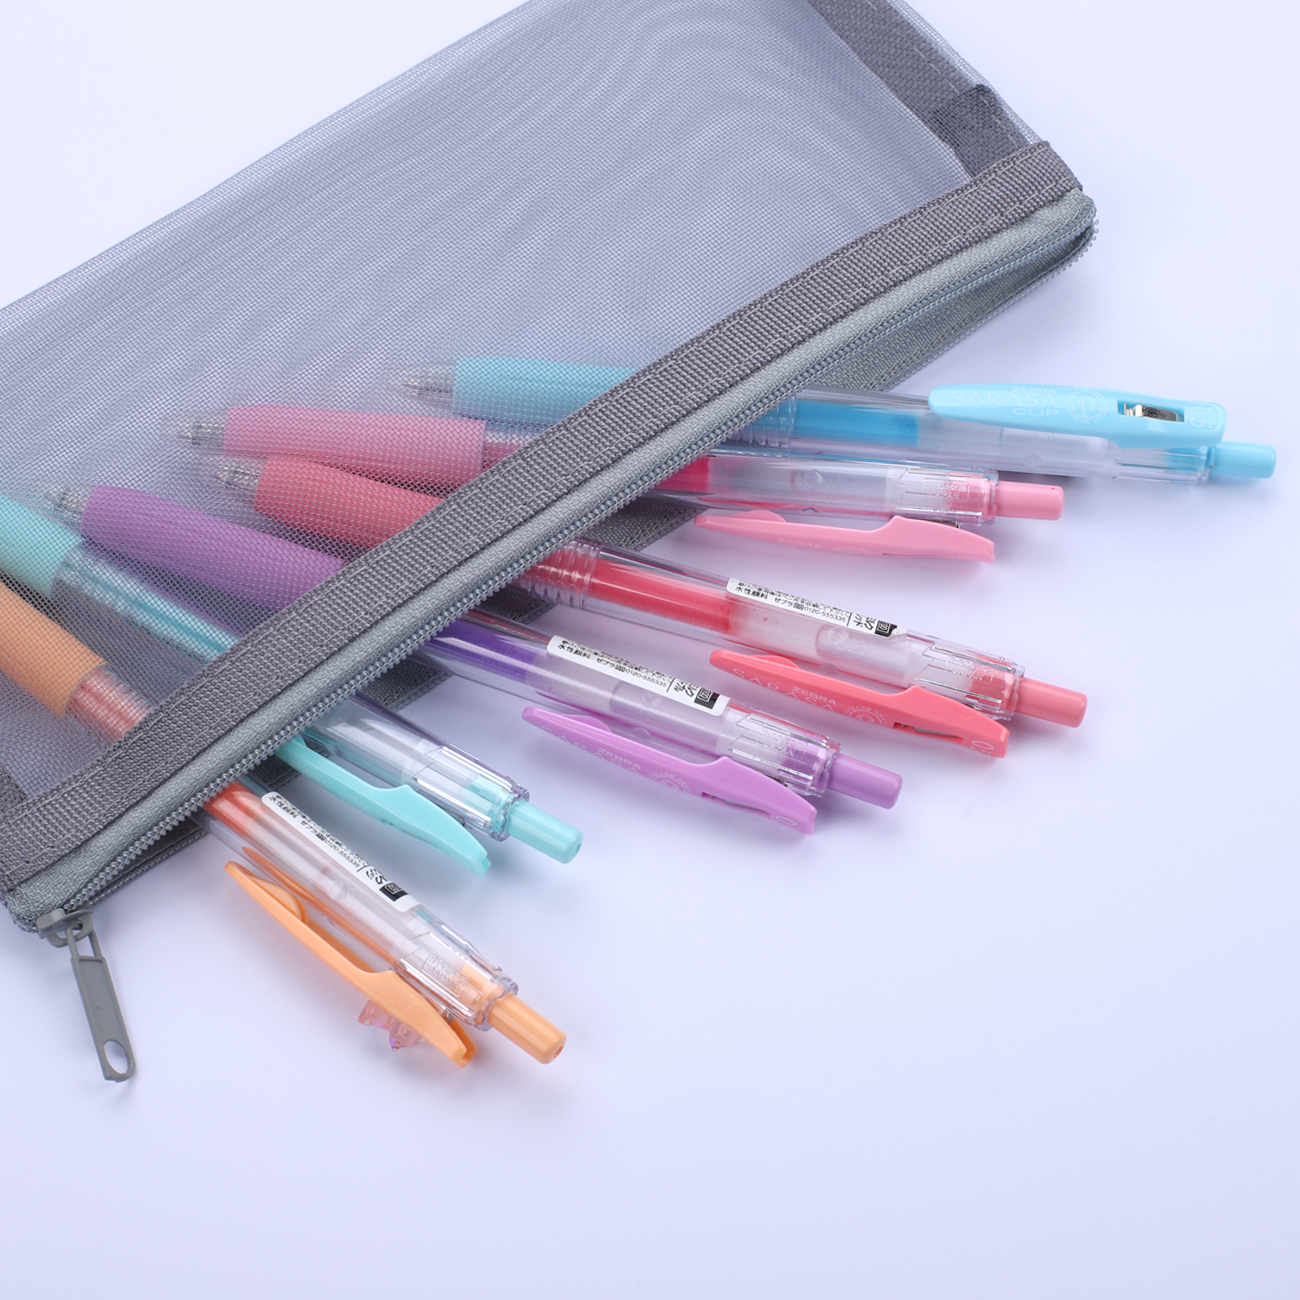 Pencil cases - plastic production